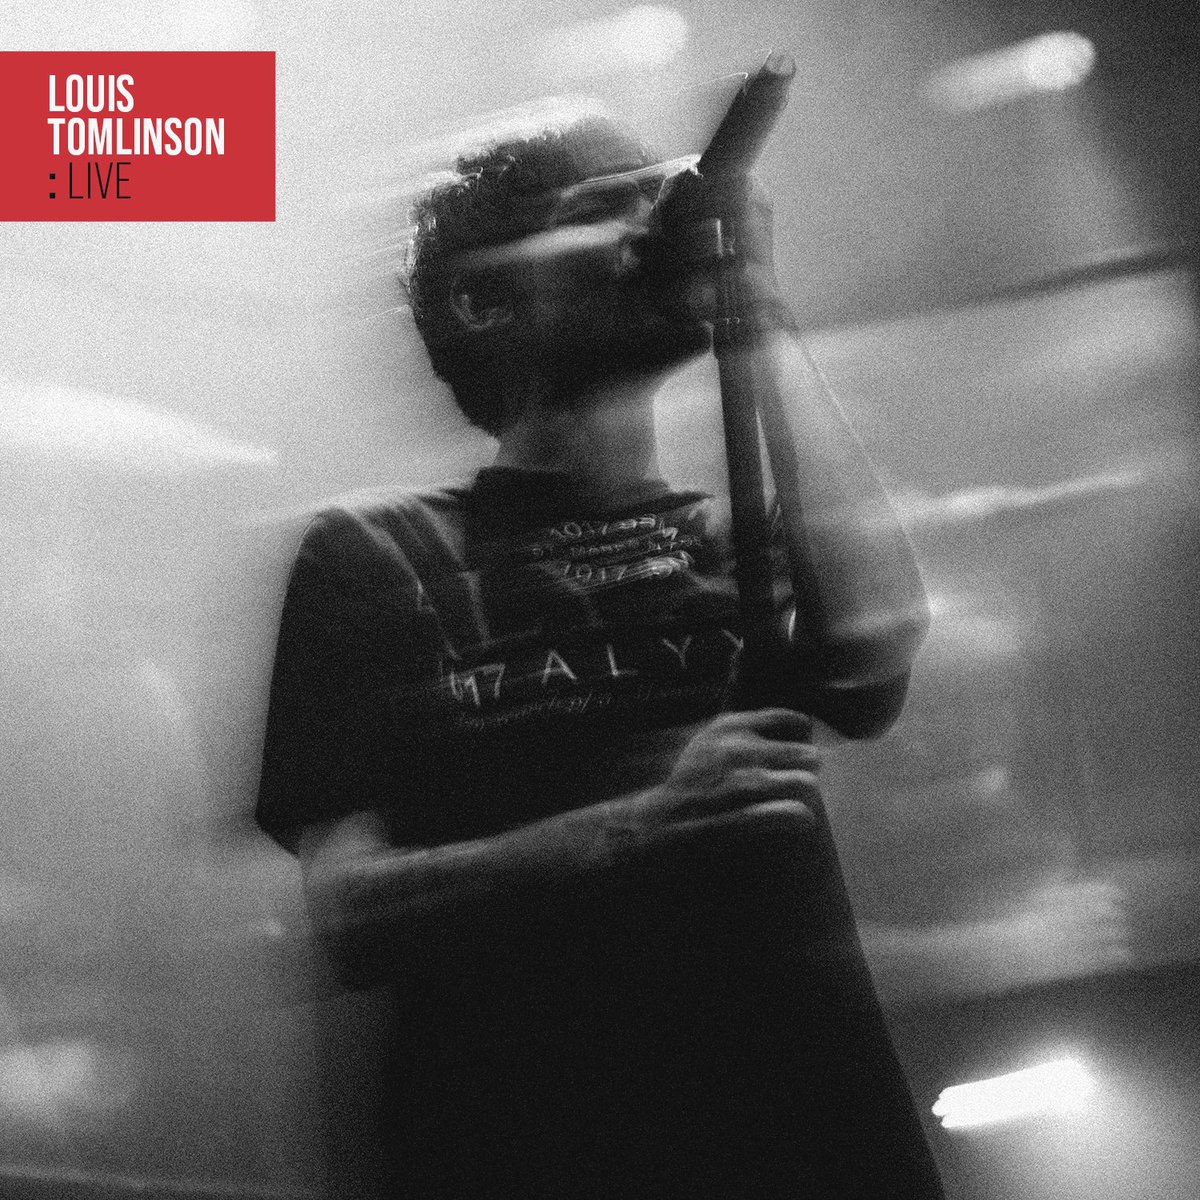 Quale canzone vi ha emozionato di più? 🥹 #LouisTomlinsonLive